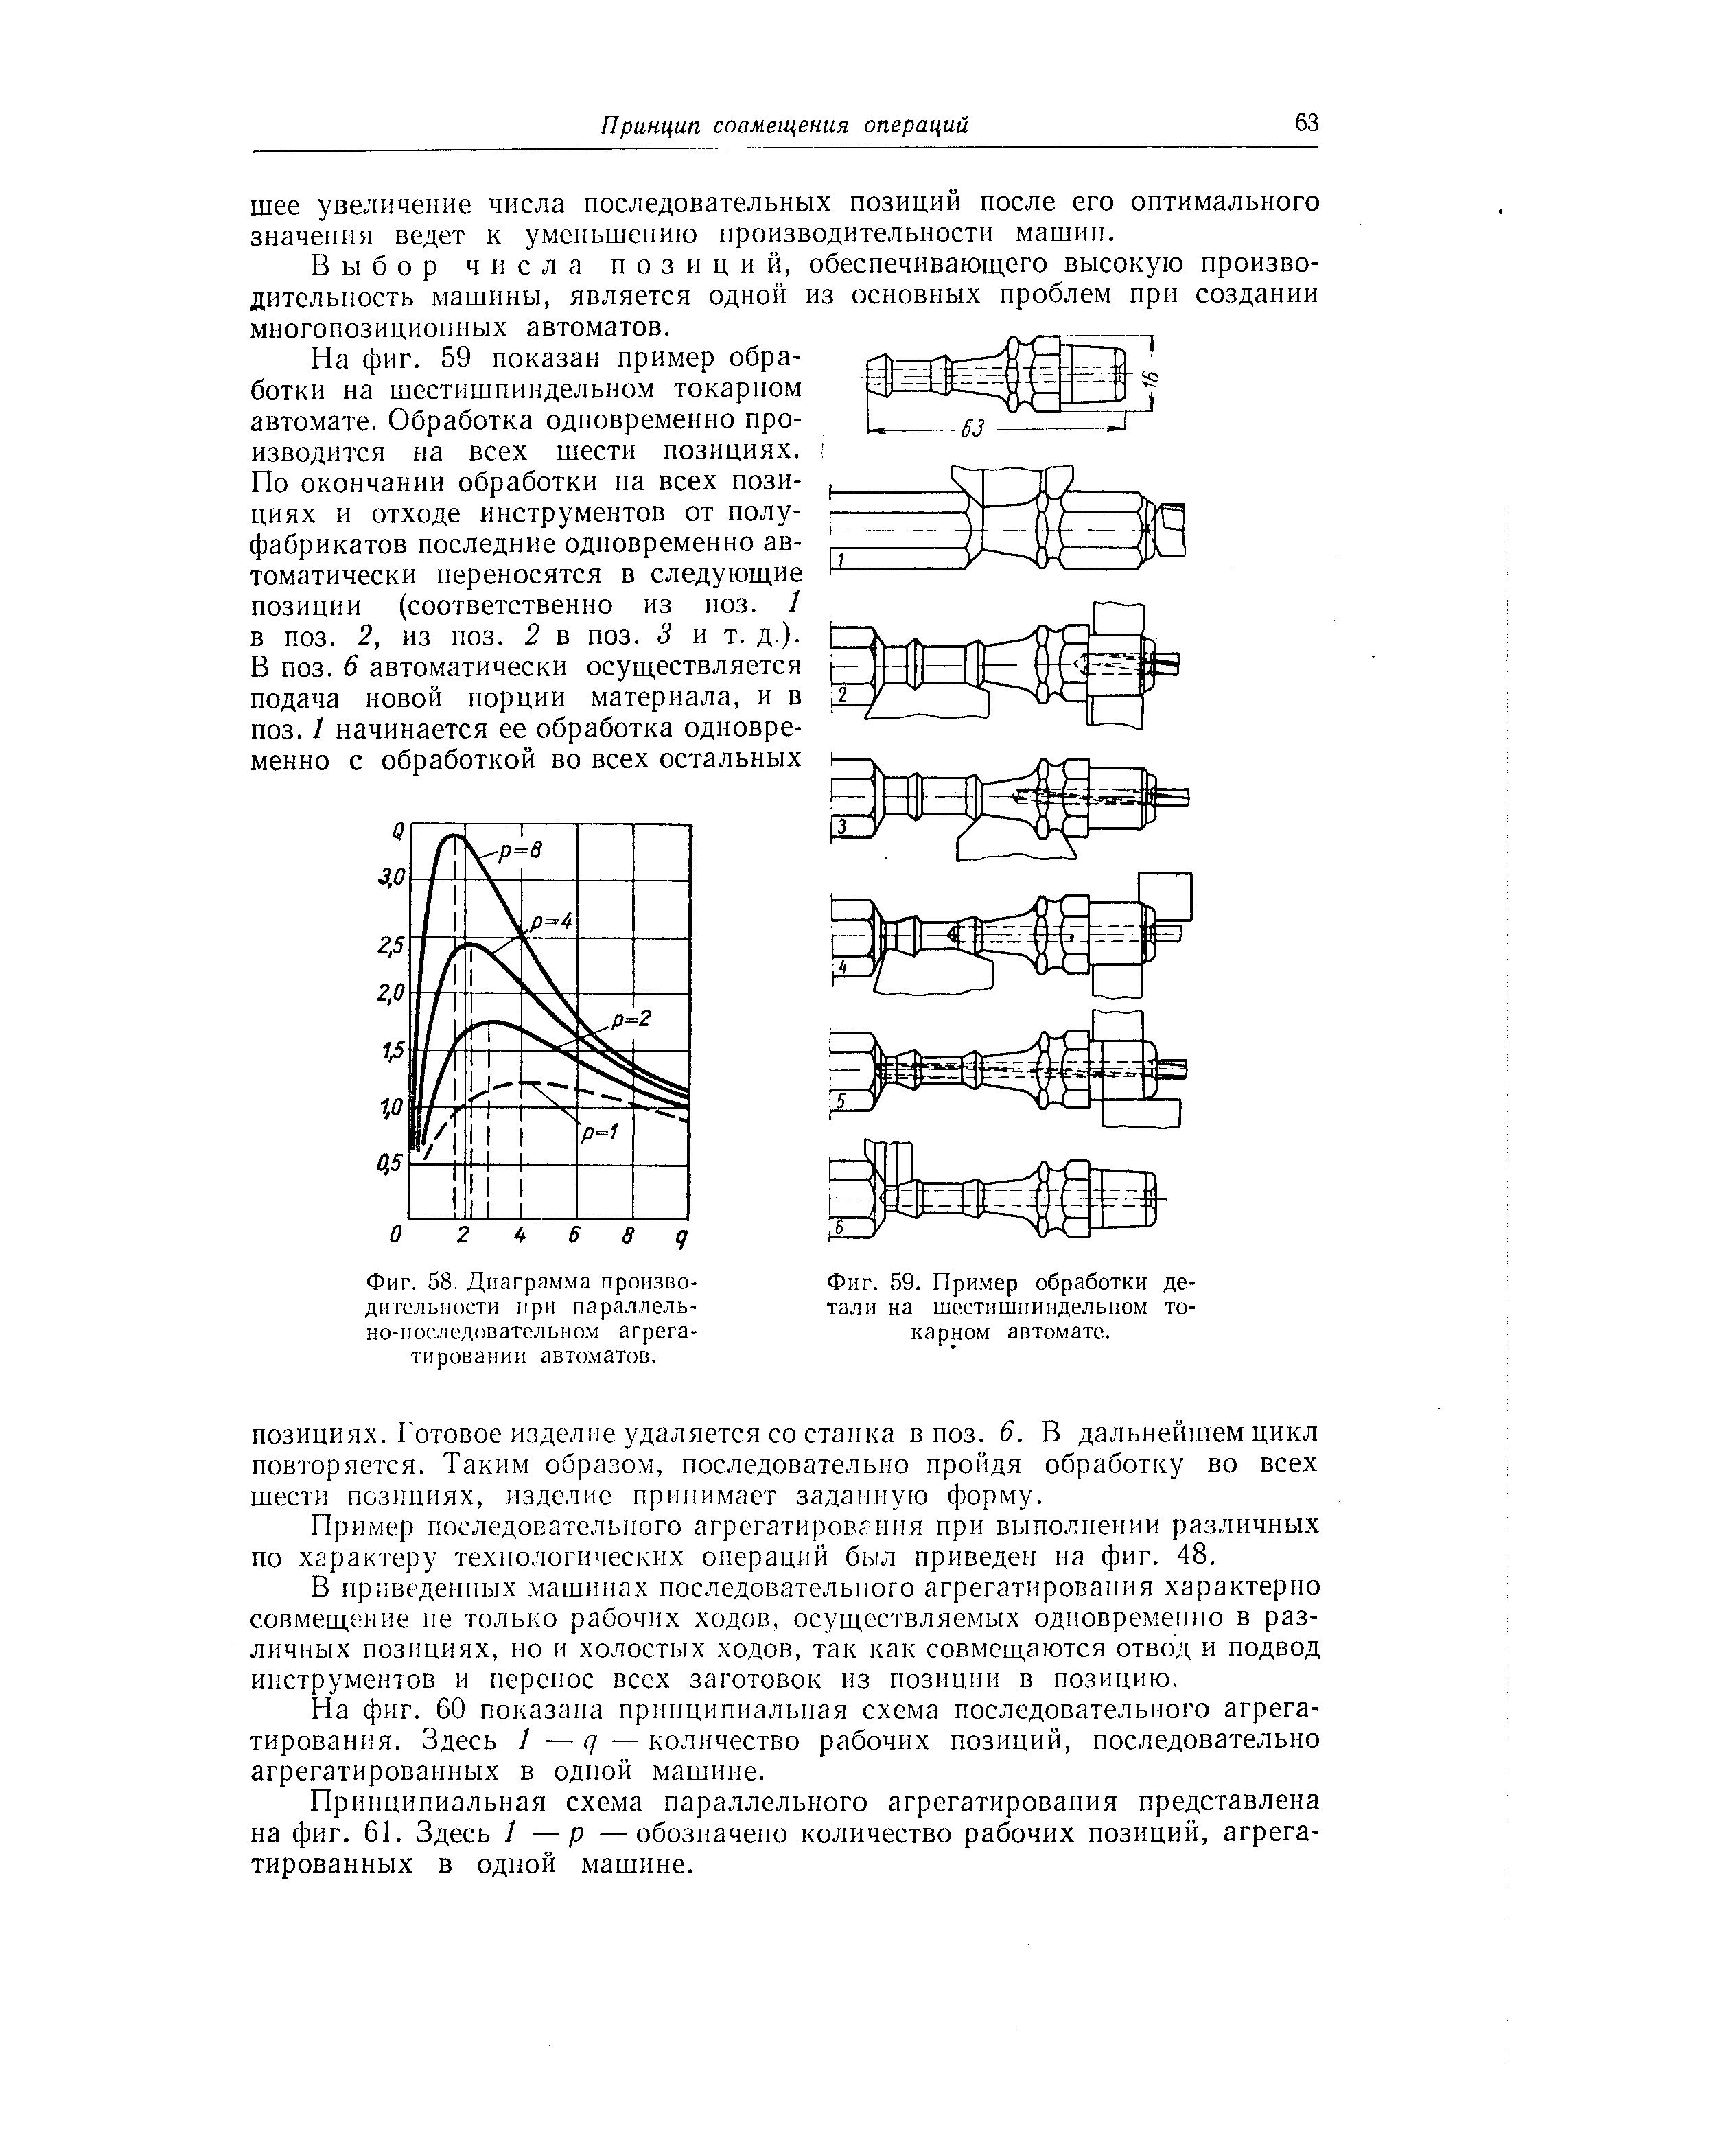 Фиг. 58. Диаграмма производительности при параллельно-последовательном агрегатировании автоматов.
